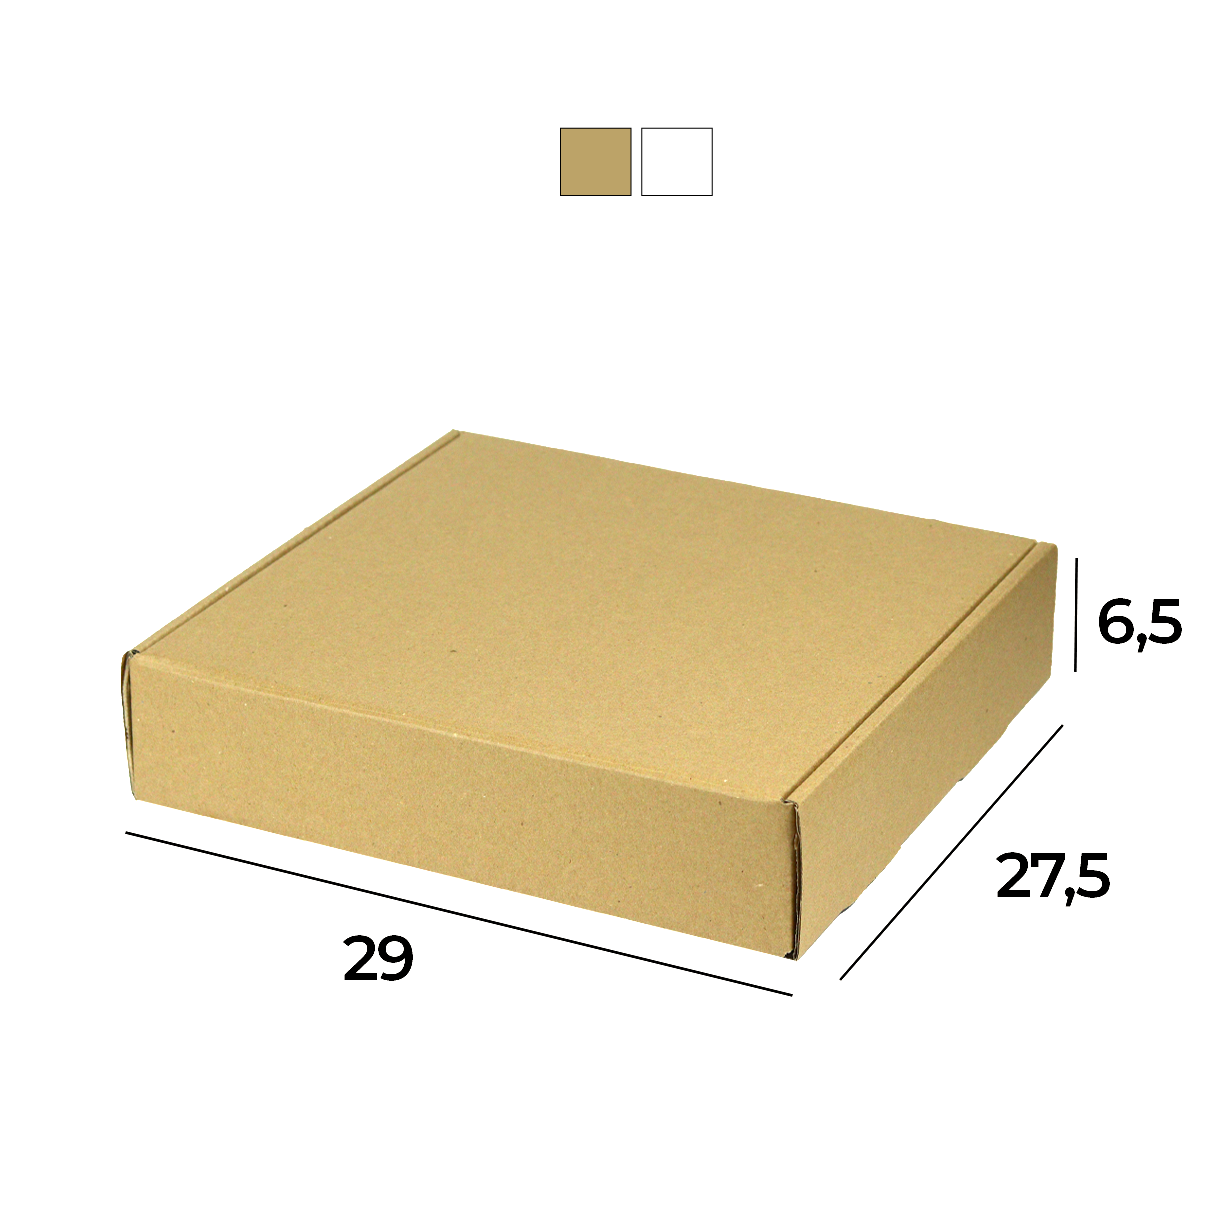 Caixa de Papelão Sedex 19 (29x27,5x6,5) Lisa